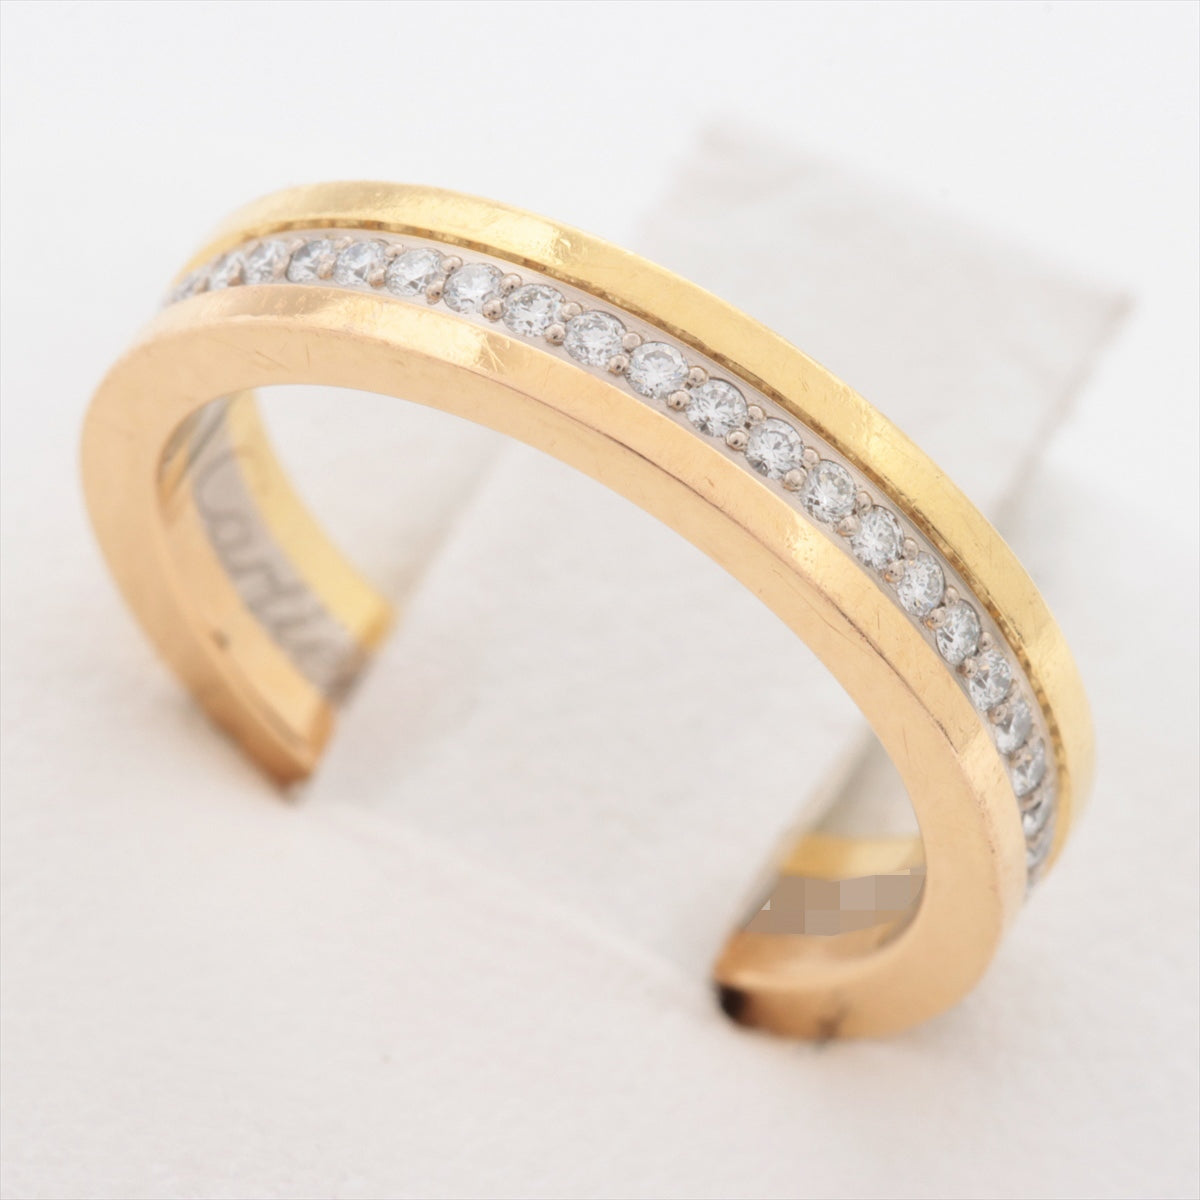 Cartier Tricolor Full Eternity Diamond Ring 750(YG×PG×WG) 4.1g 47 84052947